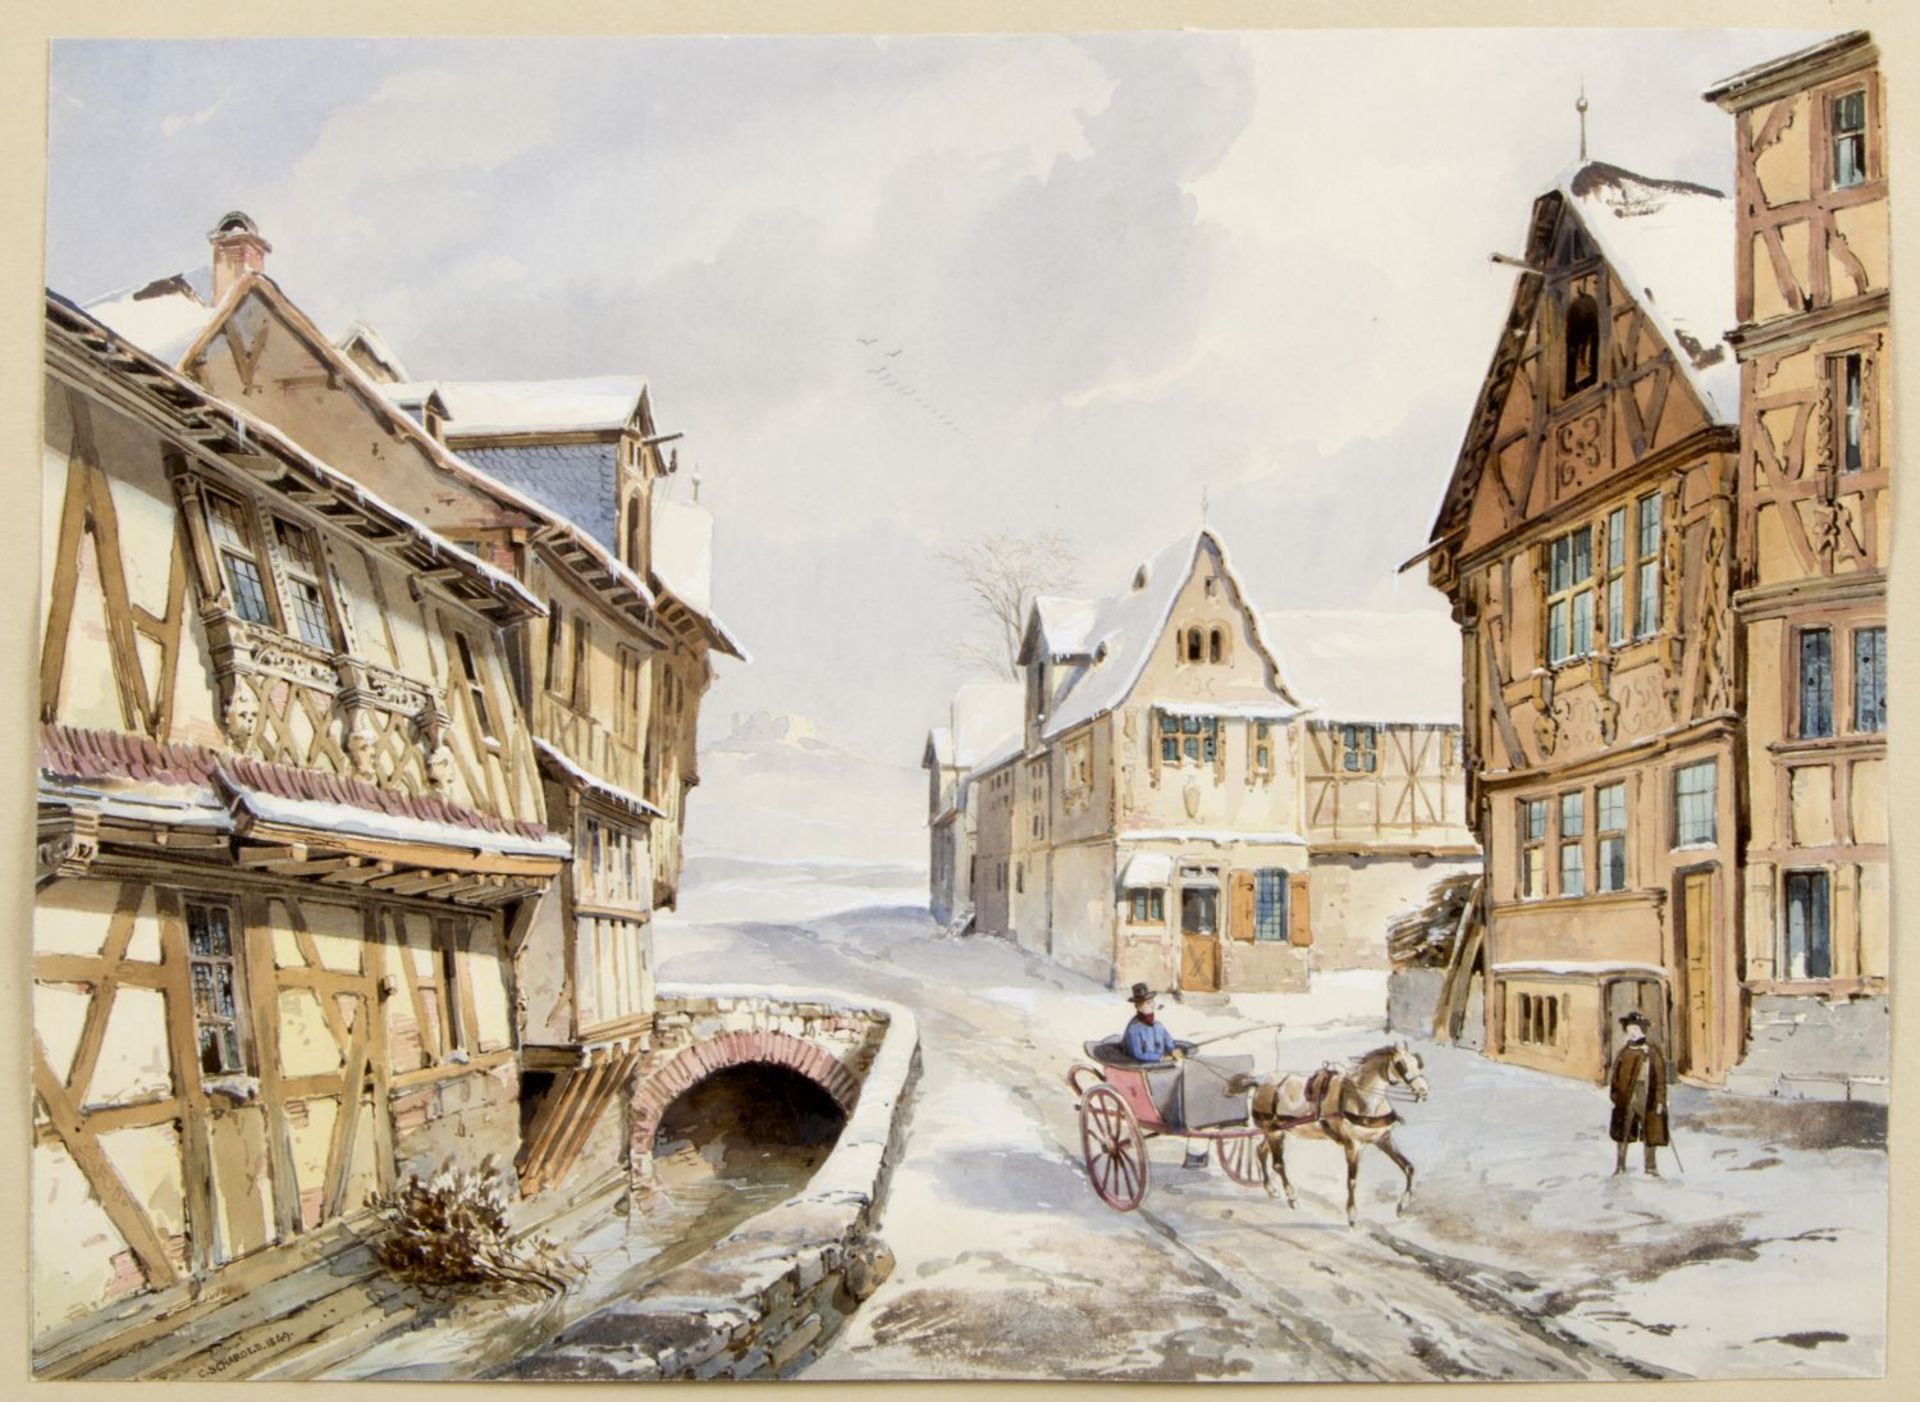 Scharold, Carl. 1811 - Würzburg - 1865 Kutsche in einer verschneiten Kleinstadt. Gouache über Bleist